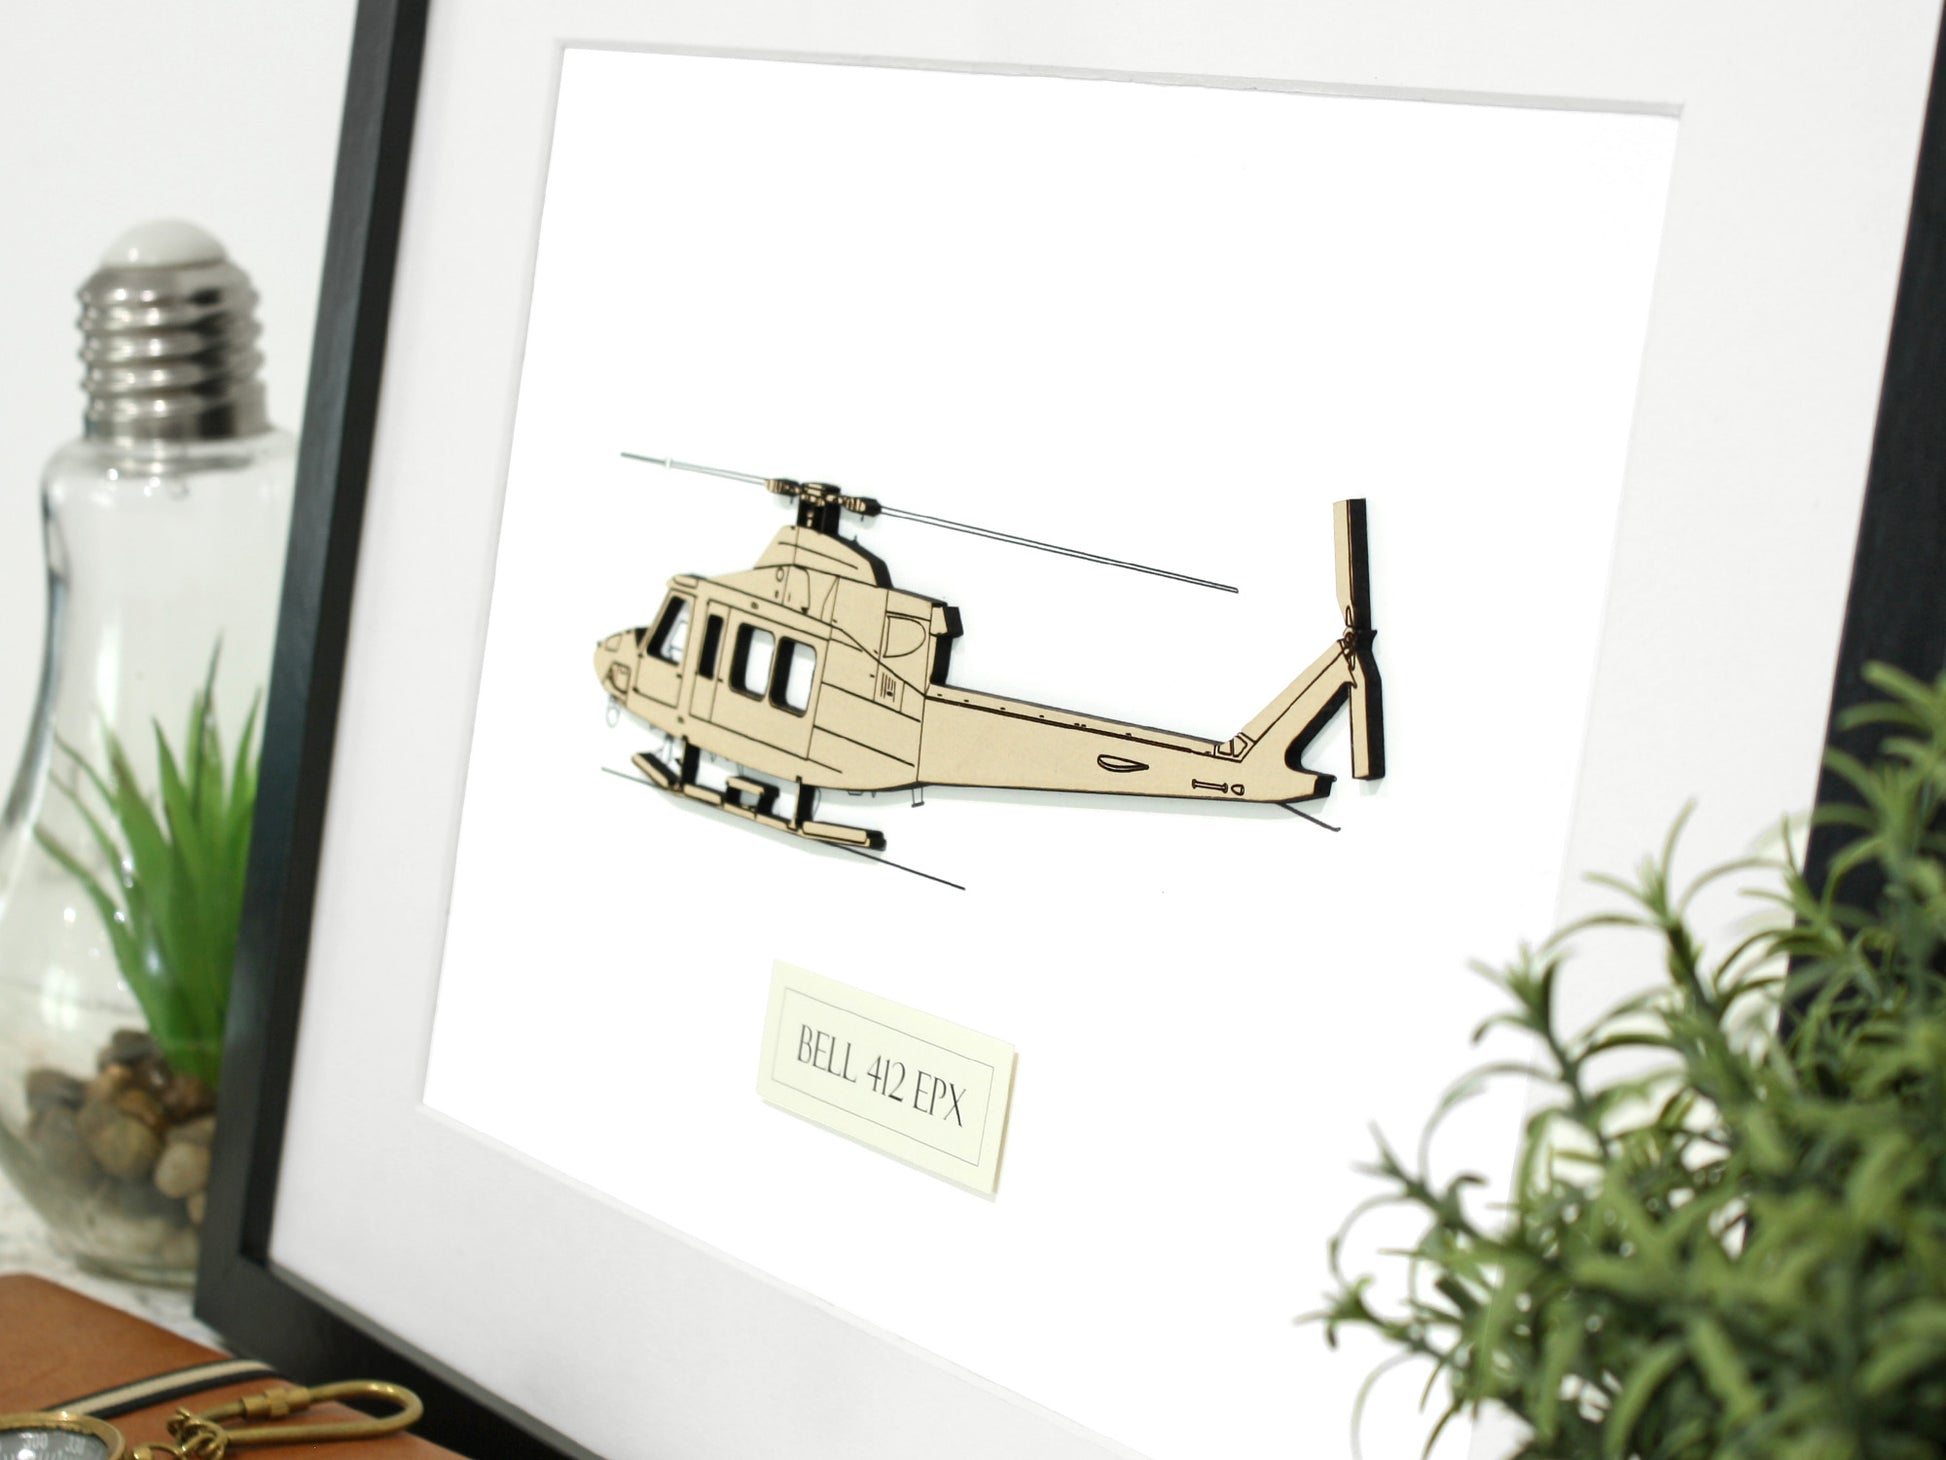 Bell 412 EPX blueprint art